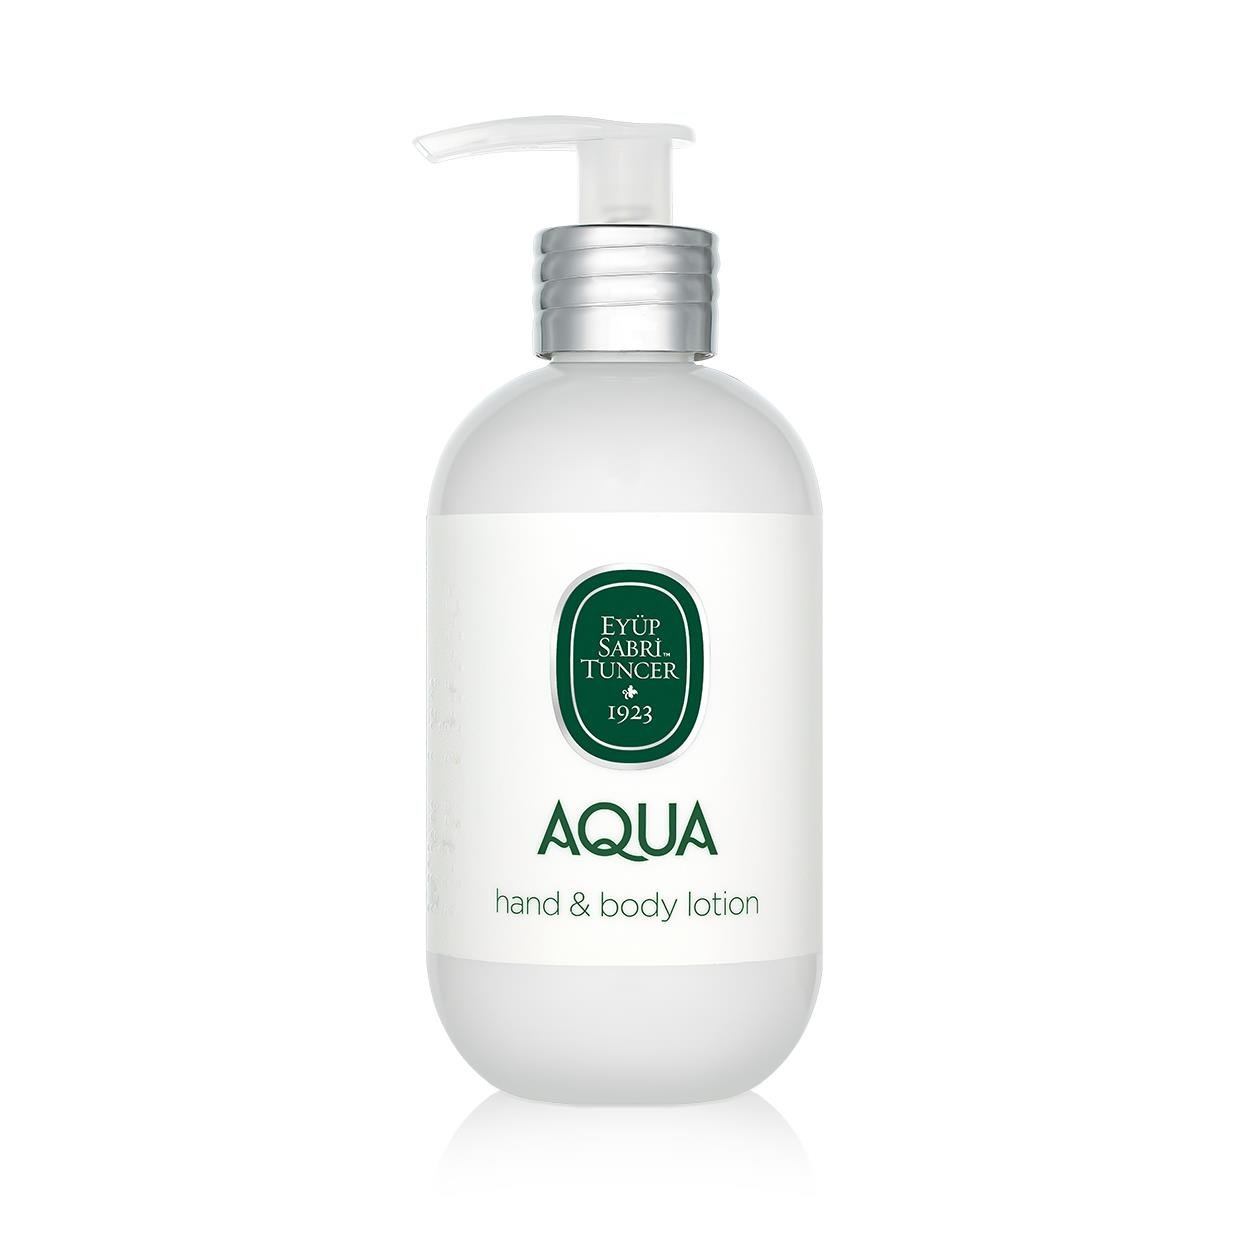 Aqua El ve Vücut Losyonu 280 ml Fiyatı ve Yorumları | Eyüp Sabri Tuncer